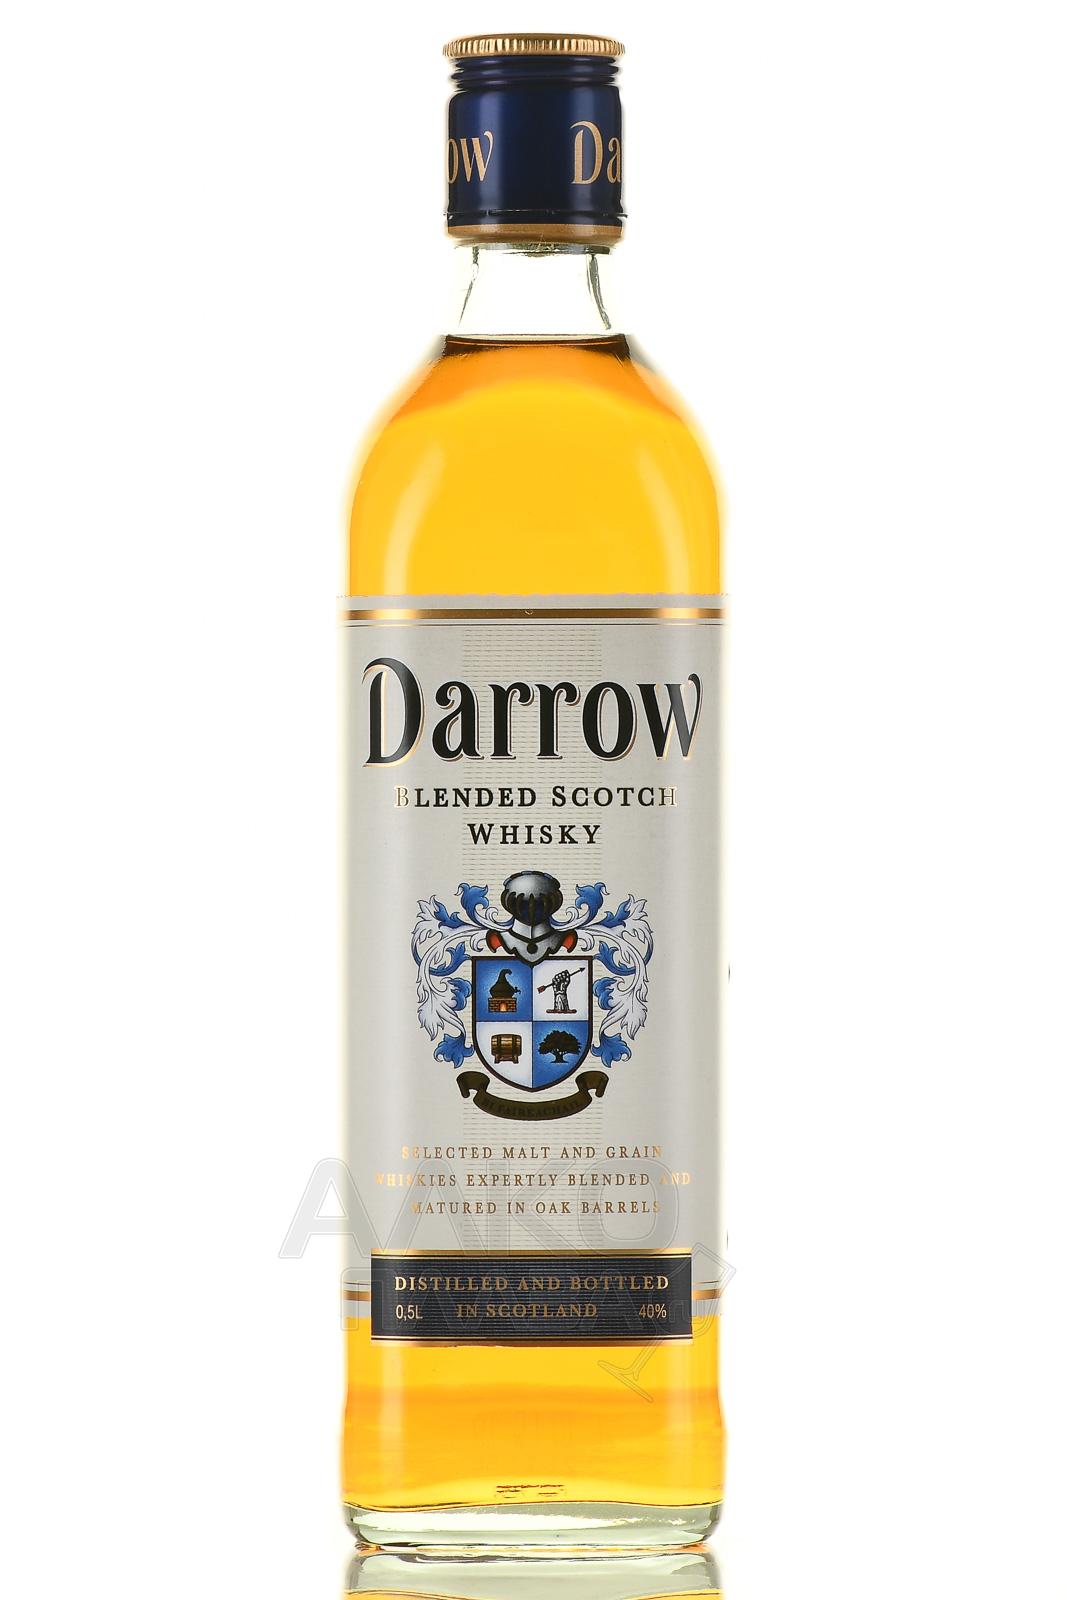 Darrow цена 0.7. Виски Darrow 0.5. Виски Дэрроу шотландский купажированный. Виски Дэрроу 0.5 шотландский купажированный 40. Виски Darrow 0.7.